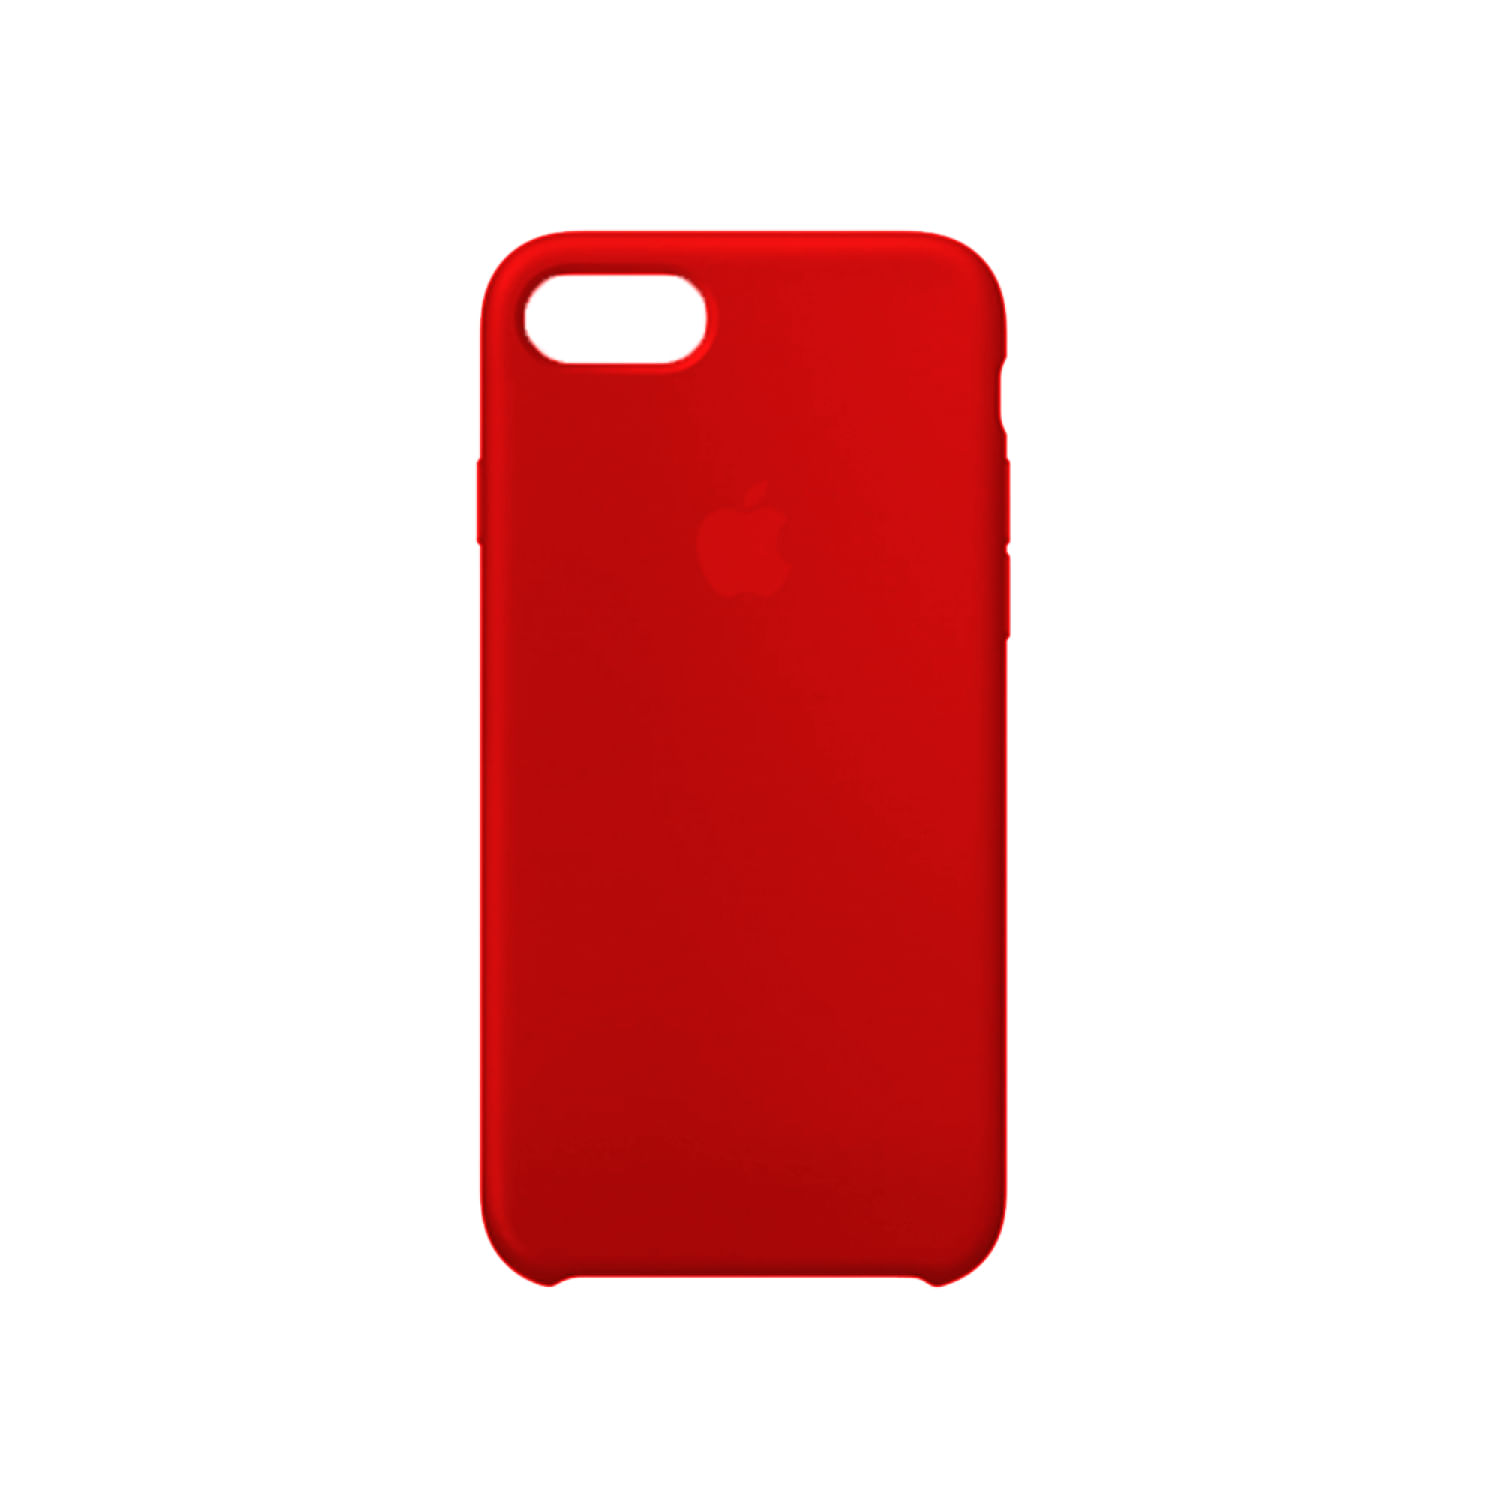 Case De Silicona Iphone 7 Rojo